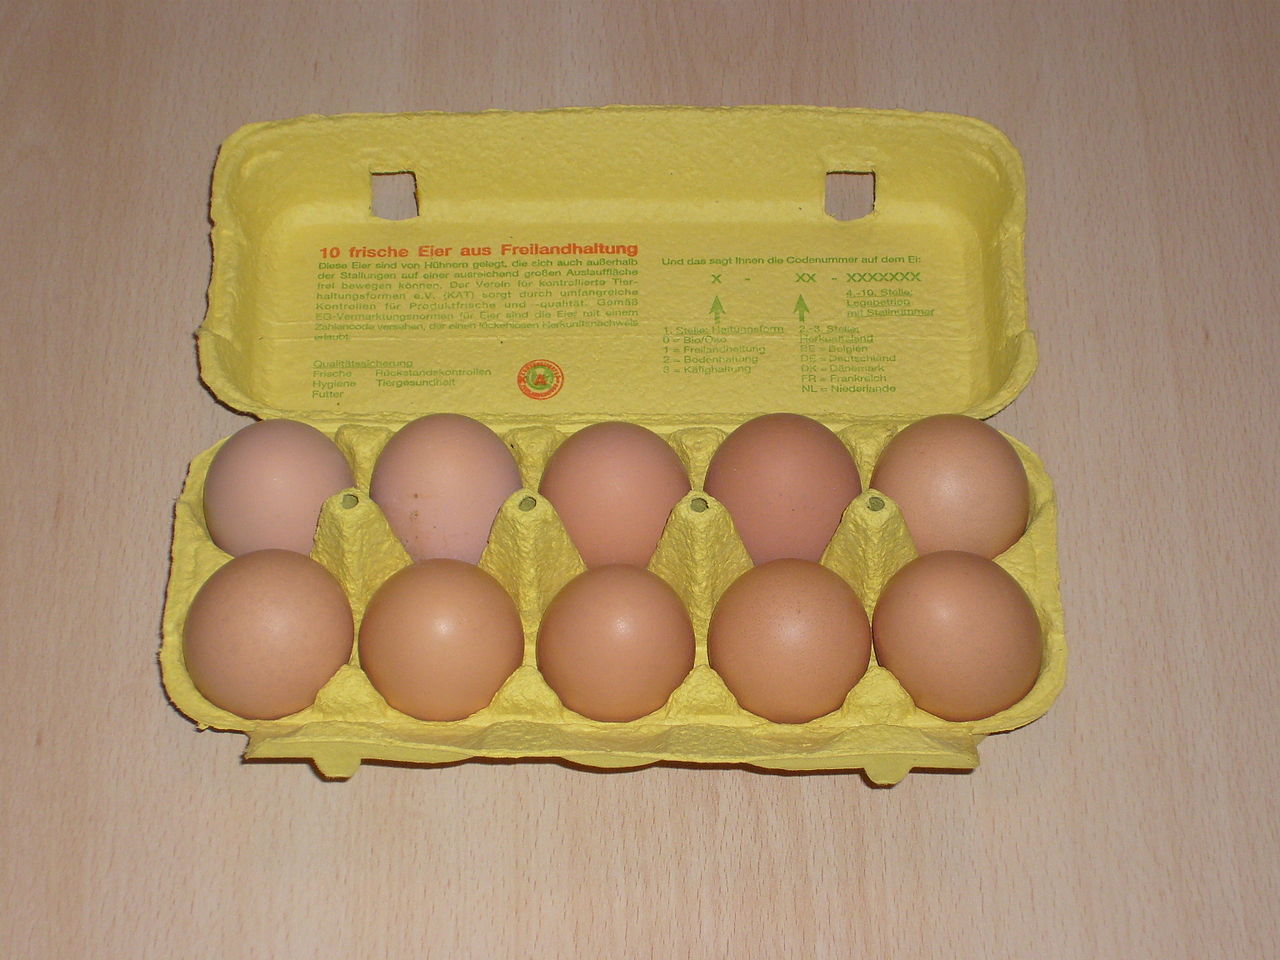 بيض في حافظة من الكرتون (ويكيبيديا)